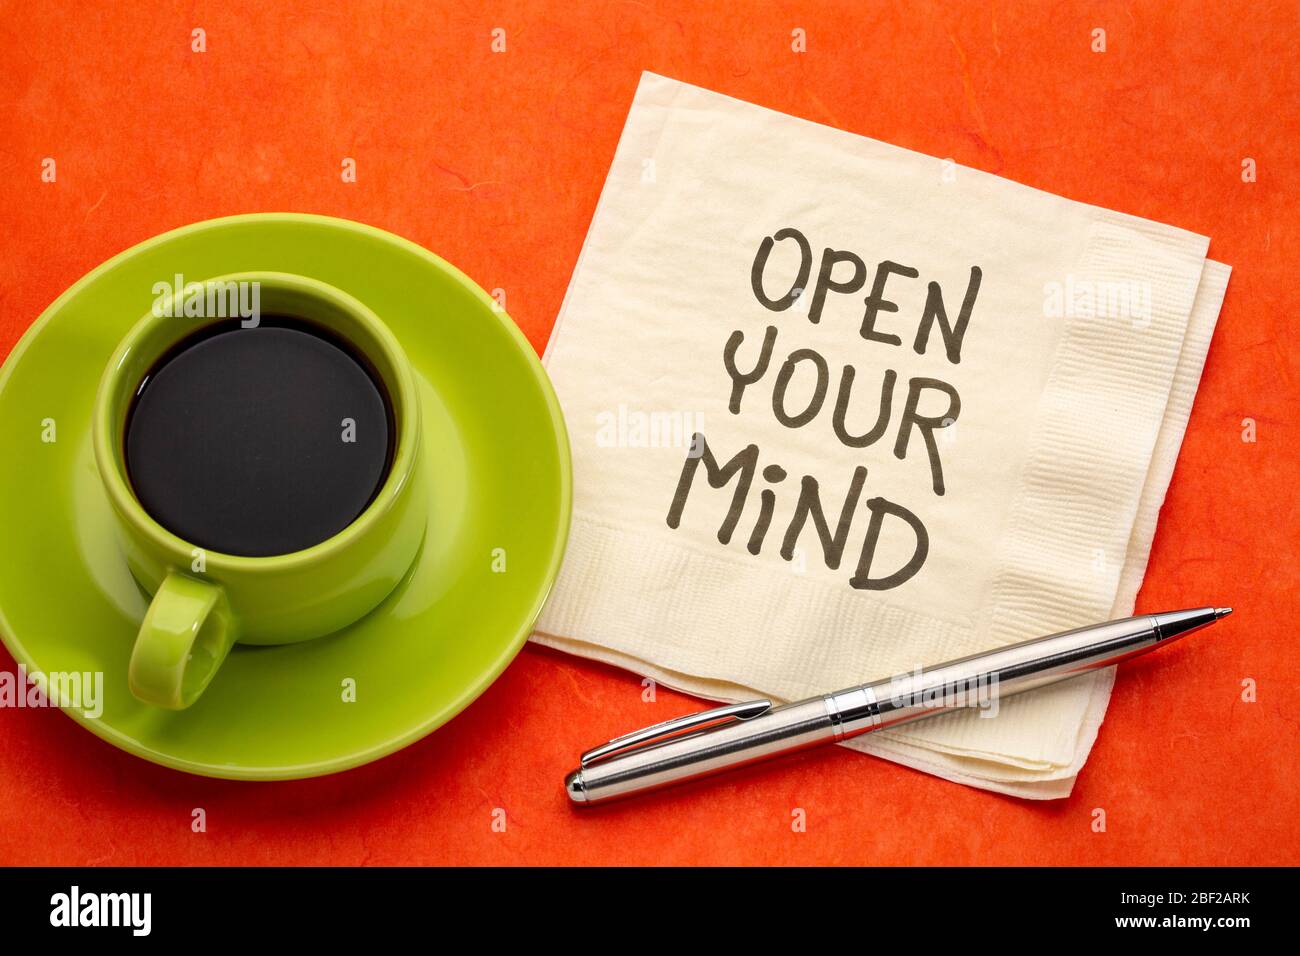 Öffnen Sie Ihren Geist inspirierende Note - Handschrift auf einer Serviette mit einer Tasse Kaffee, persönliches Wachstum, Selbstverbesserung und Entwicklung Konzept Stockfoto